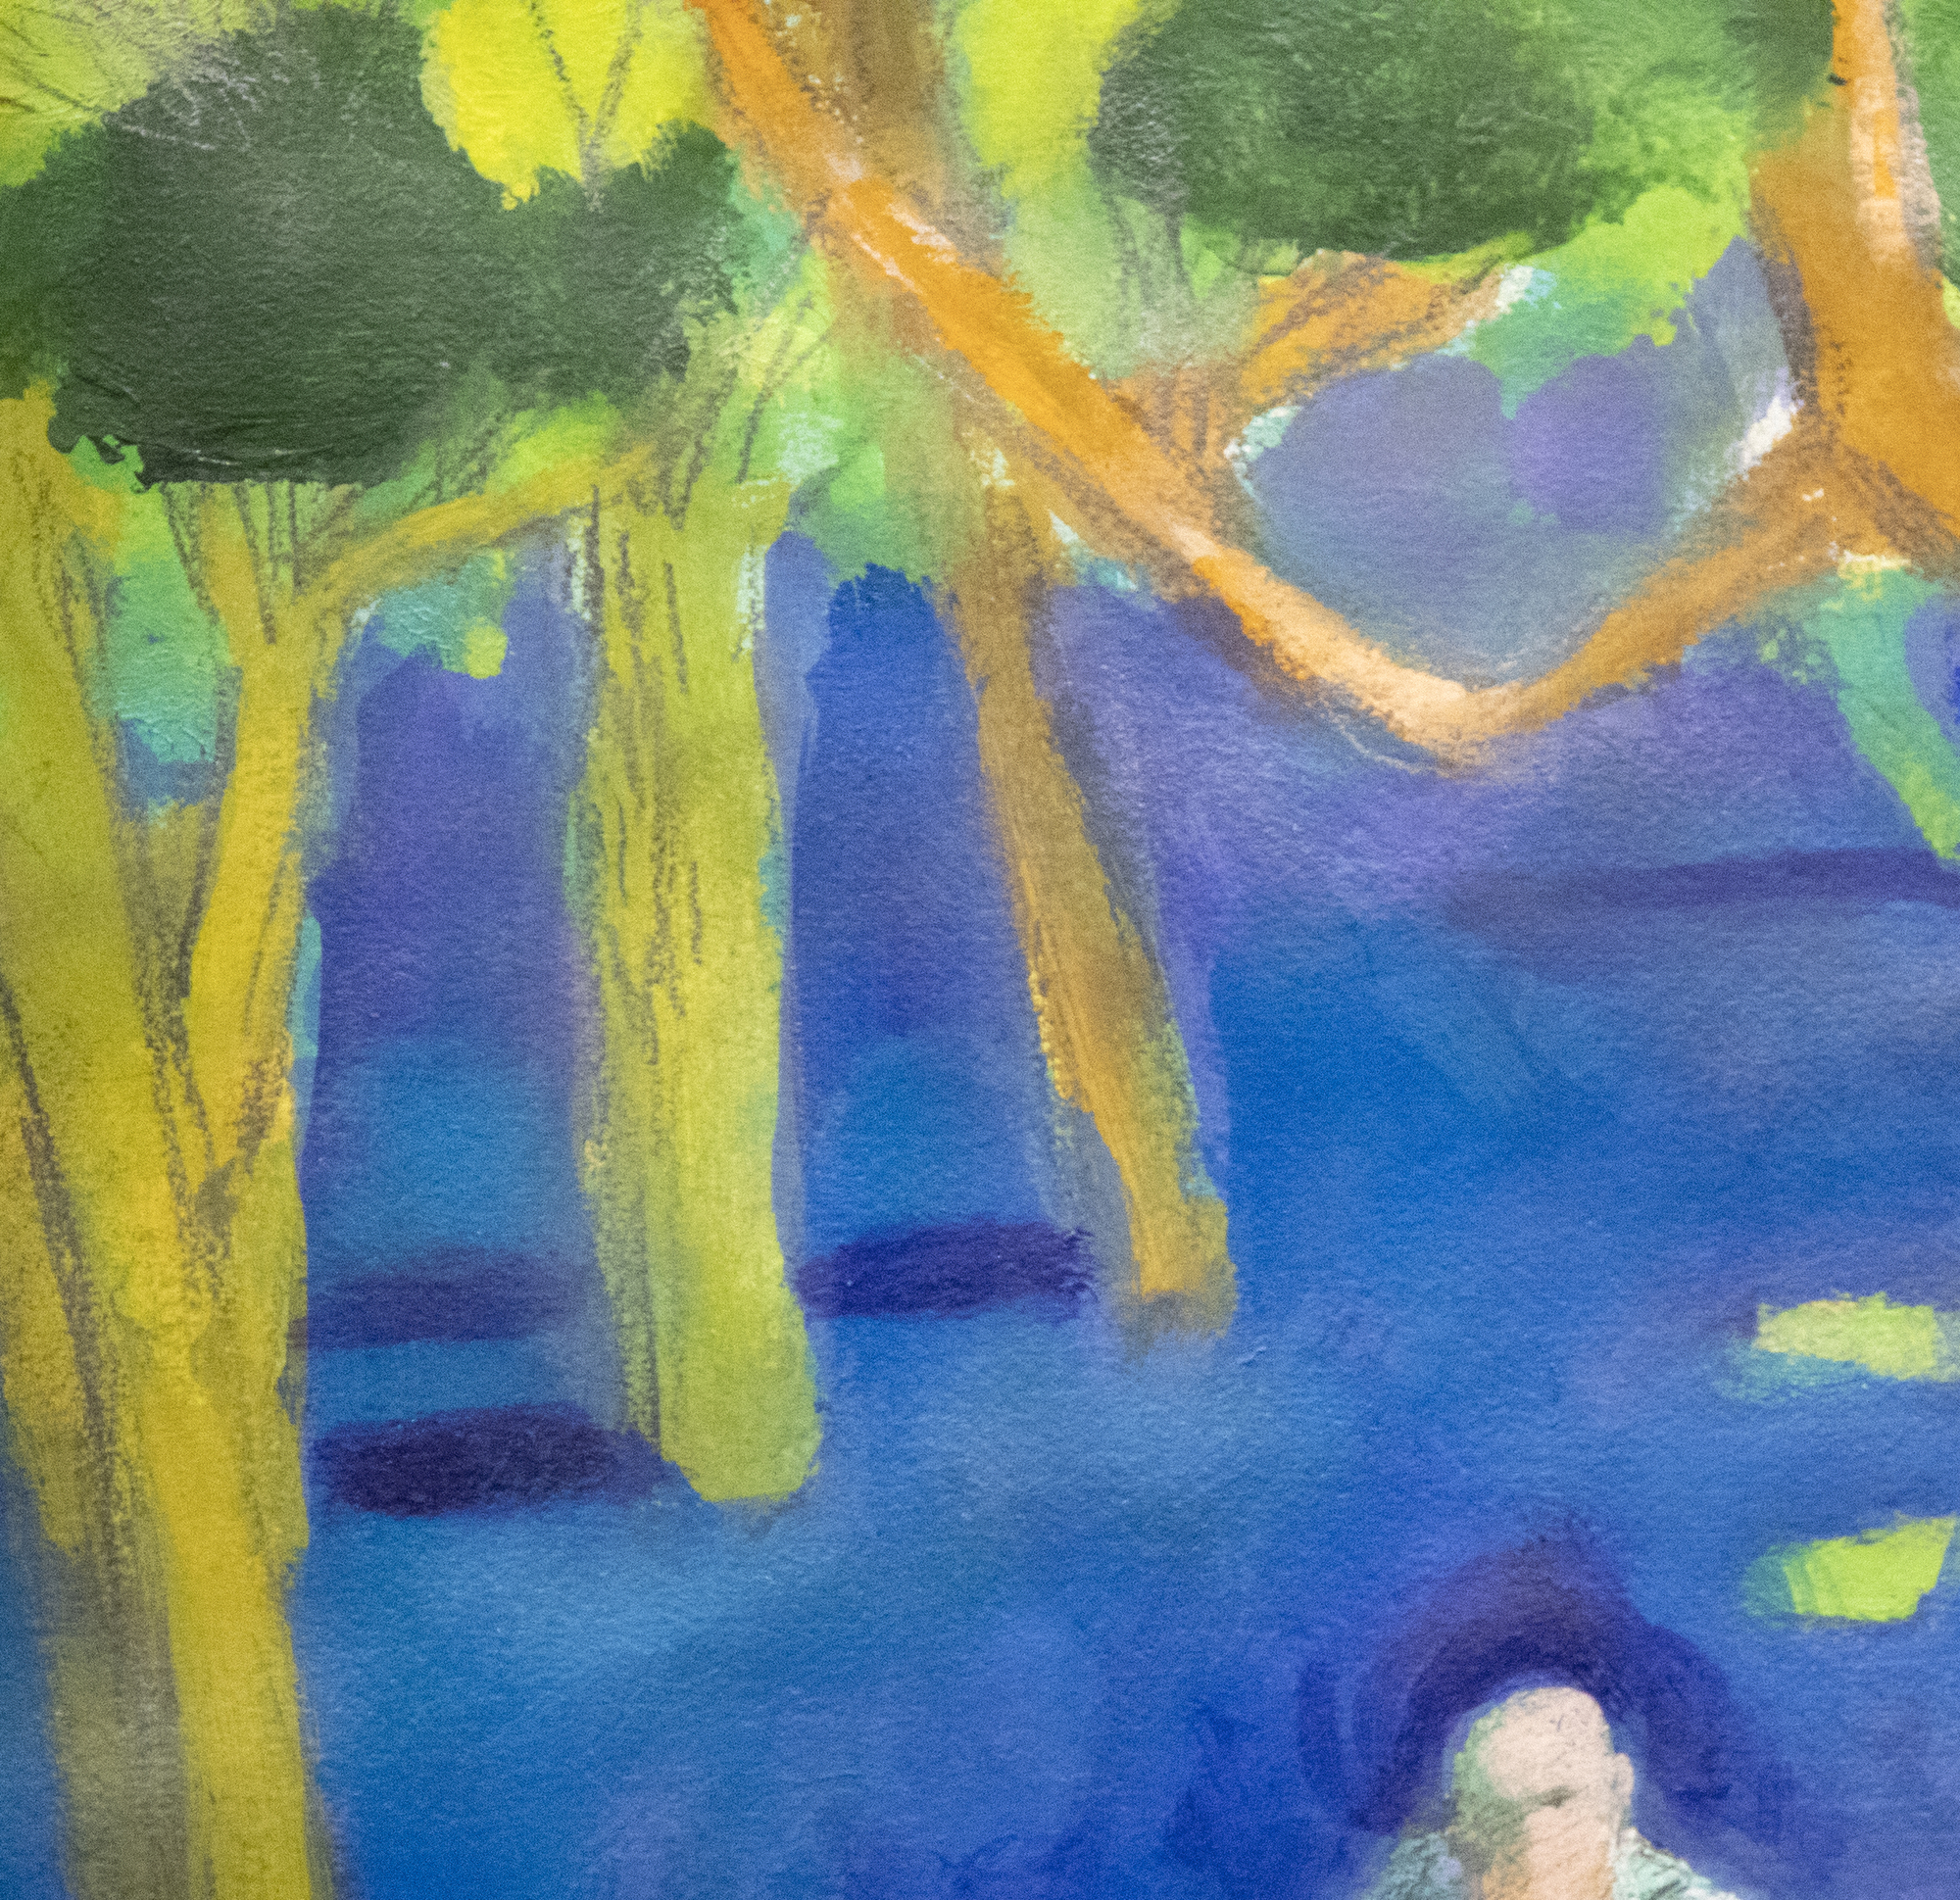 פול וונר - פארק עם דמויות סביב עץ - אקריליק ועיפרון על נייר - 22 1/4 x 30 אינץ '.